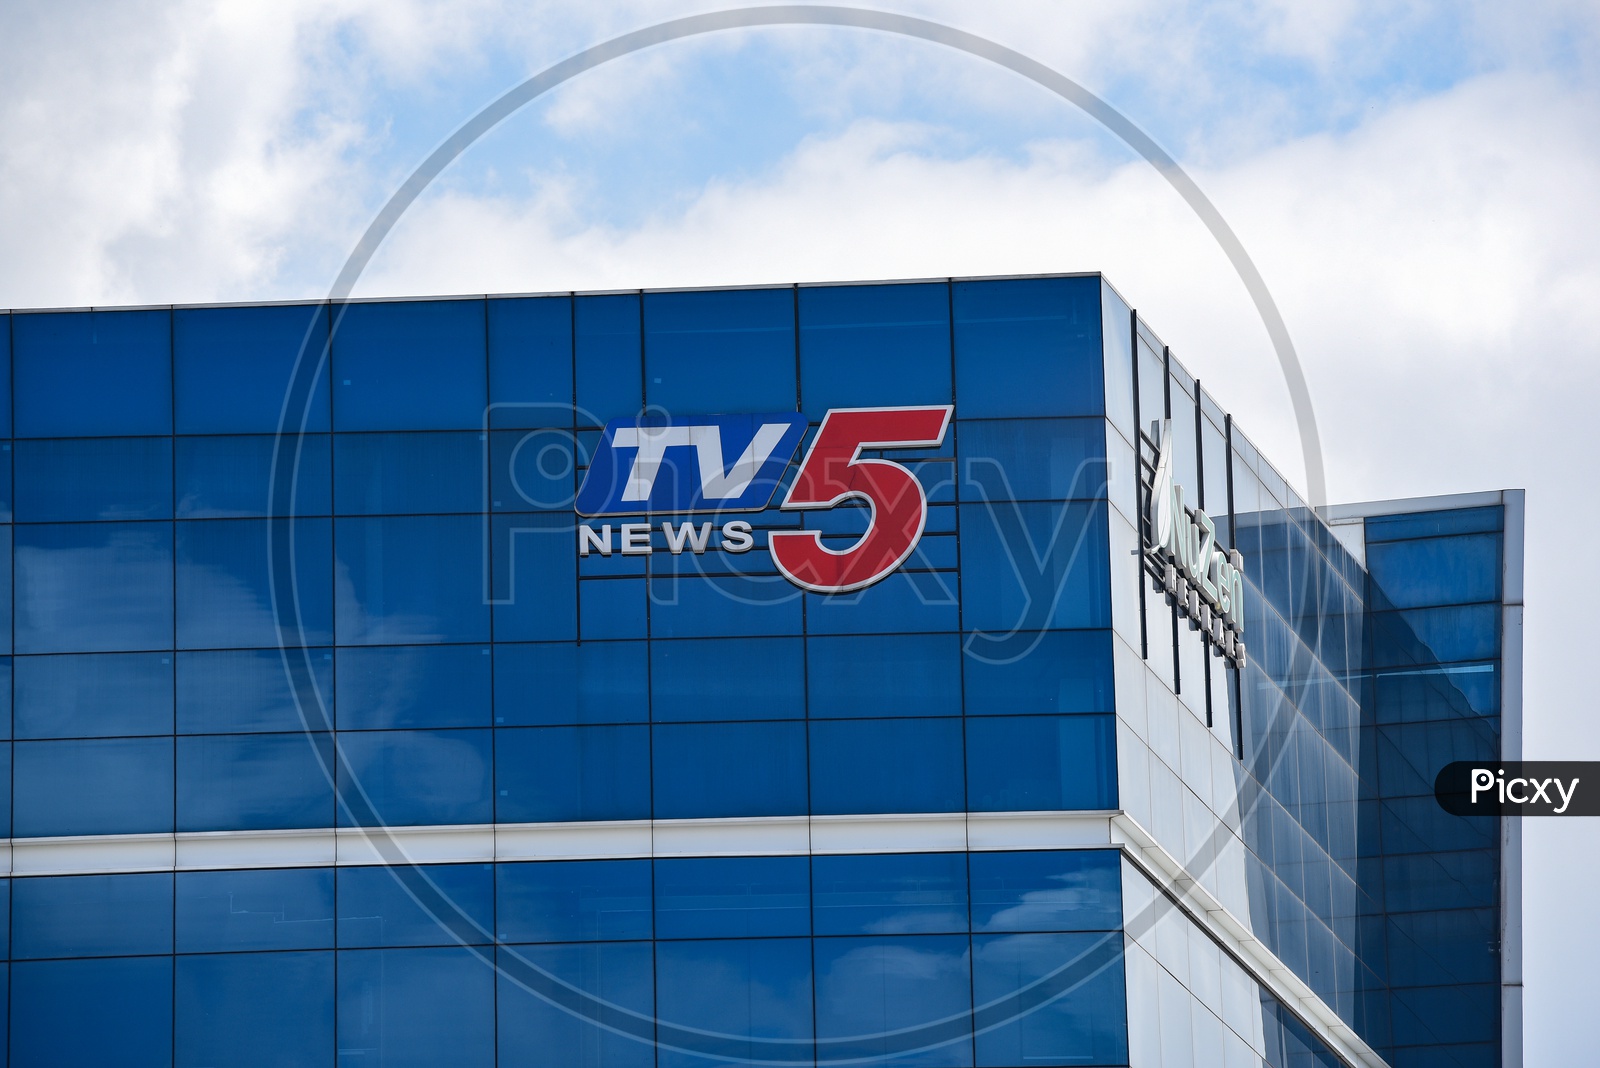 TV5 News Name on Building Facade